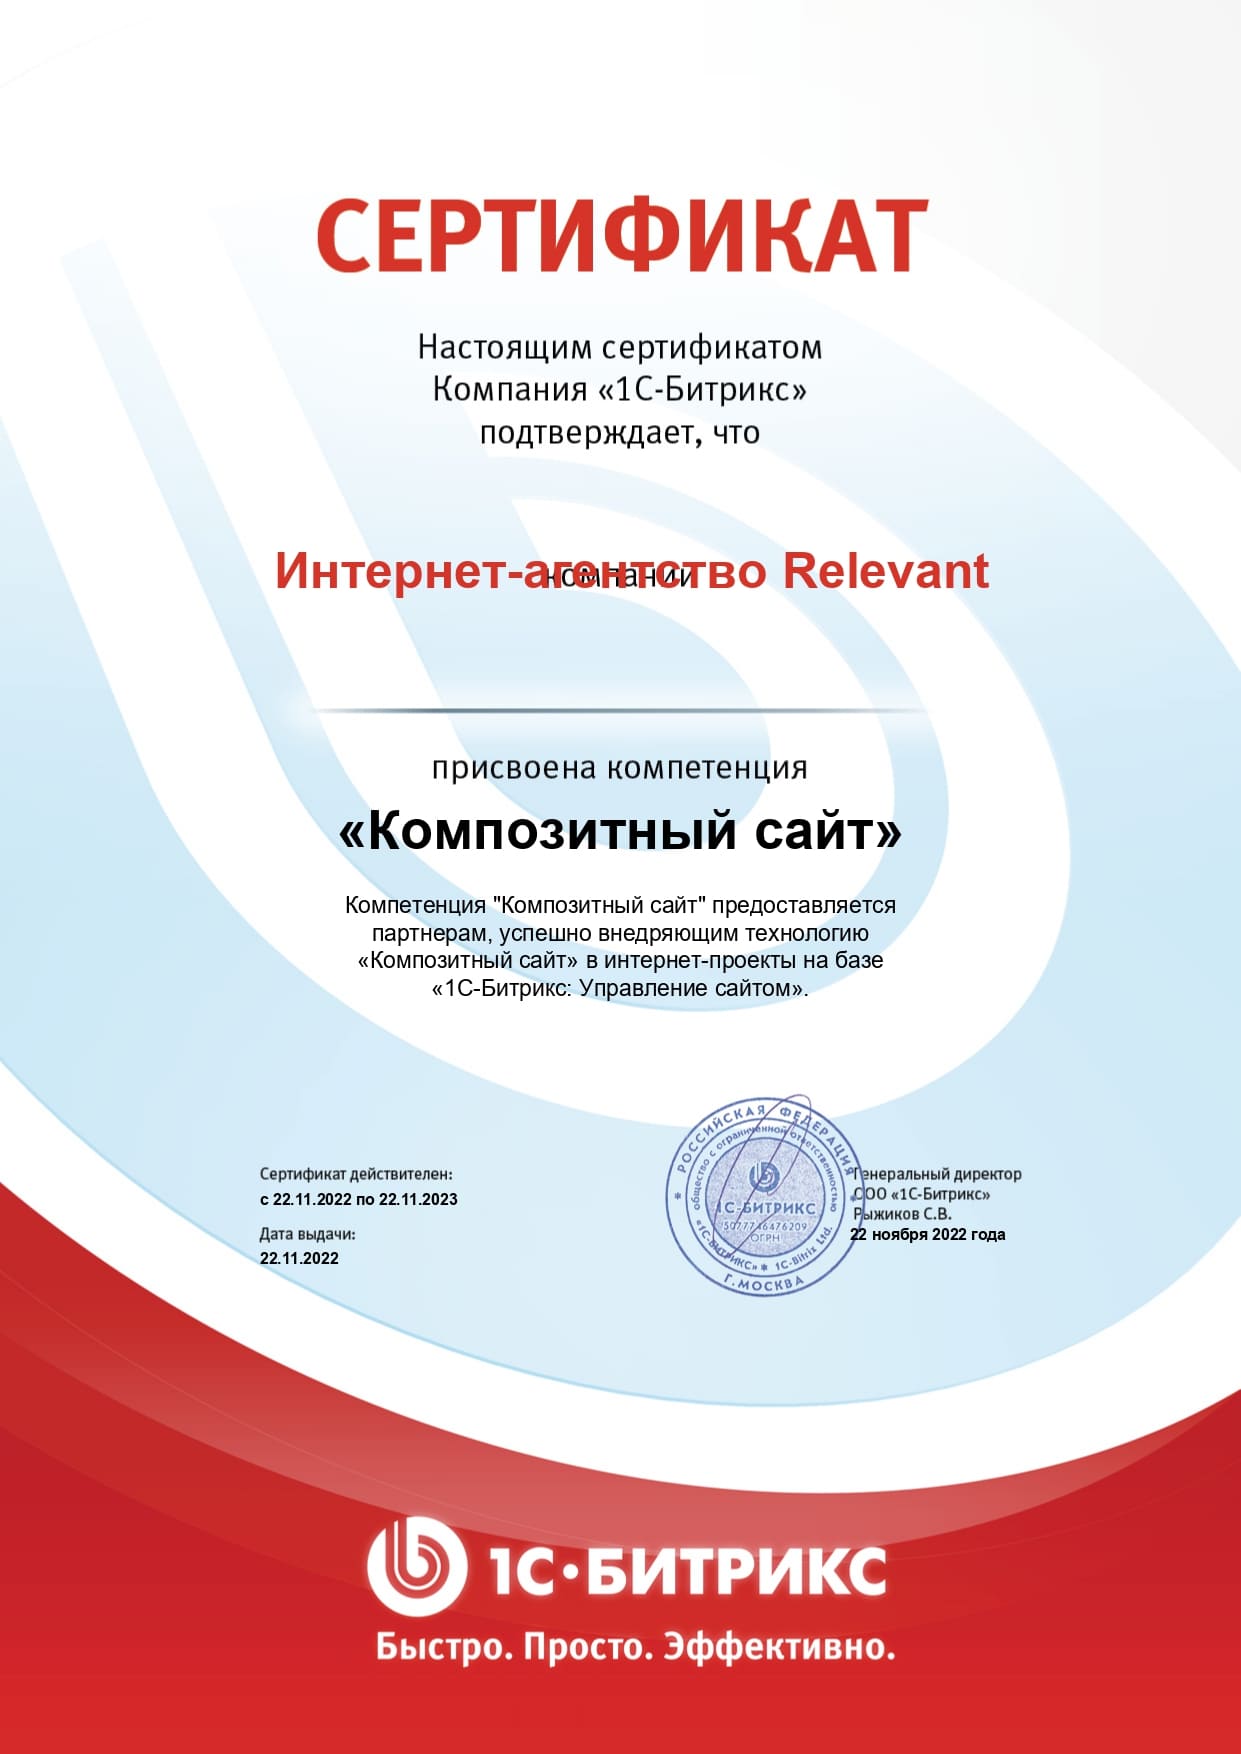 Сертификат о присвоении конпентенции "Композитный сайт"